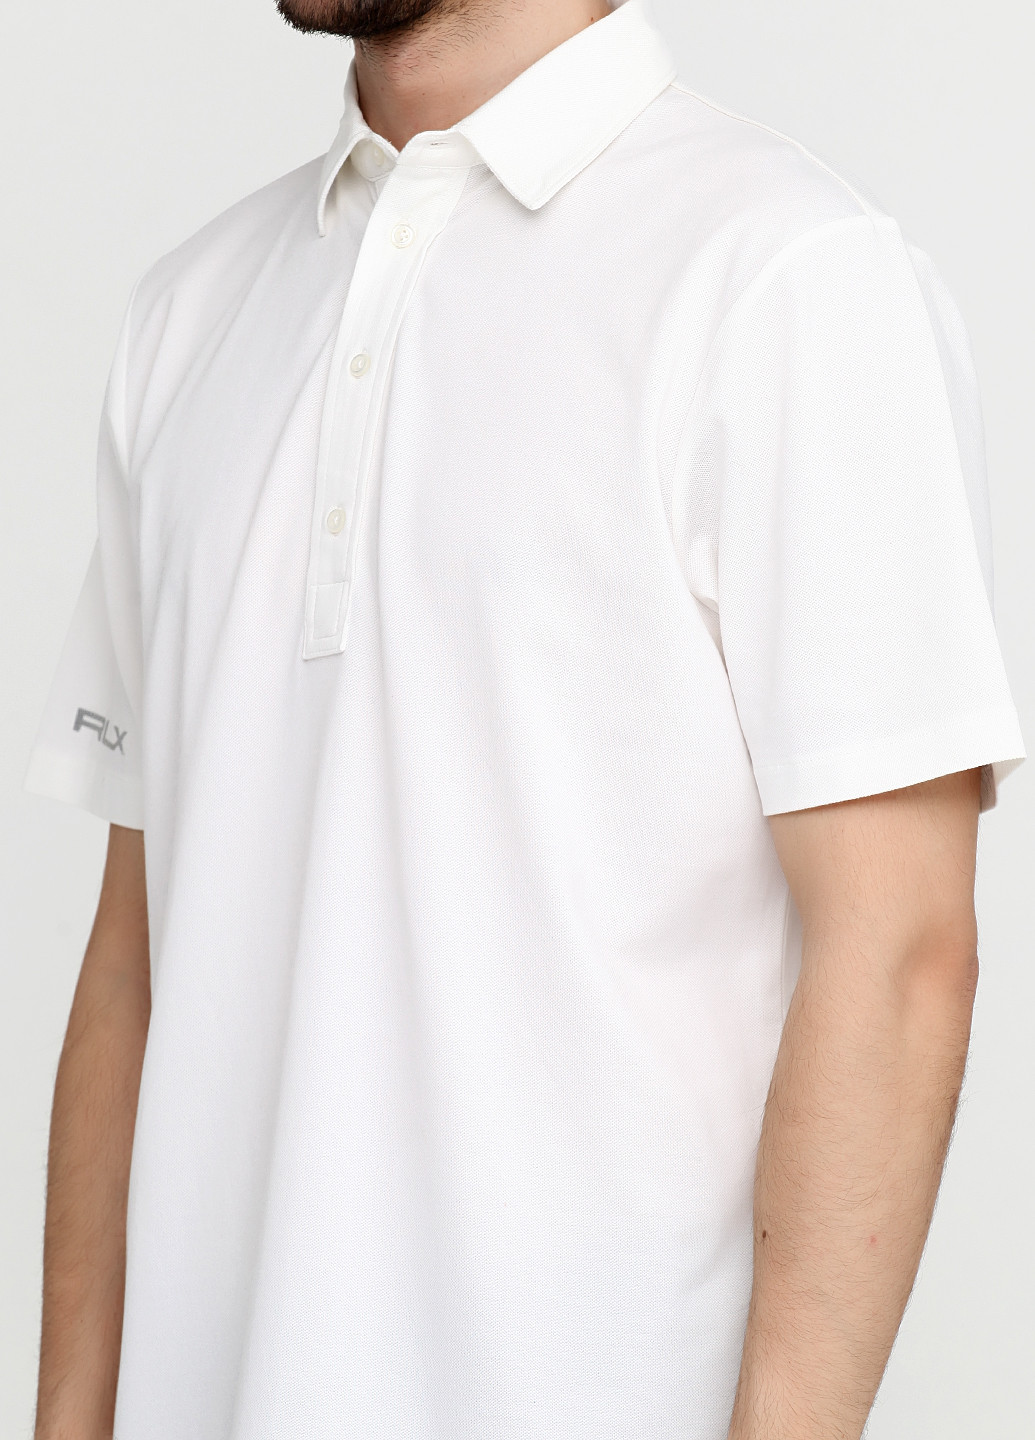 Белая футболка-поло для мужчин Ralph Lauren однотонная